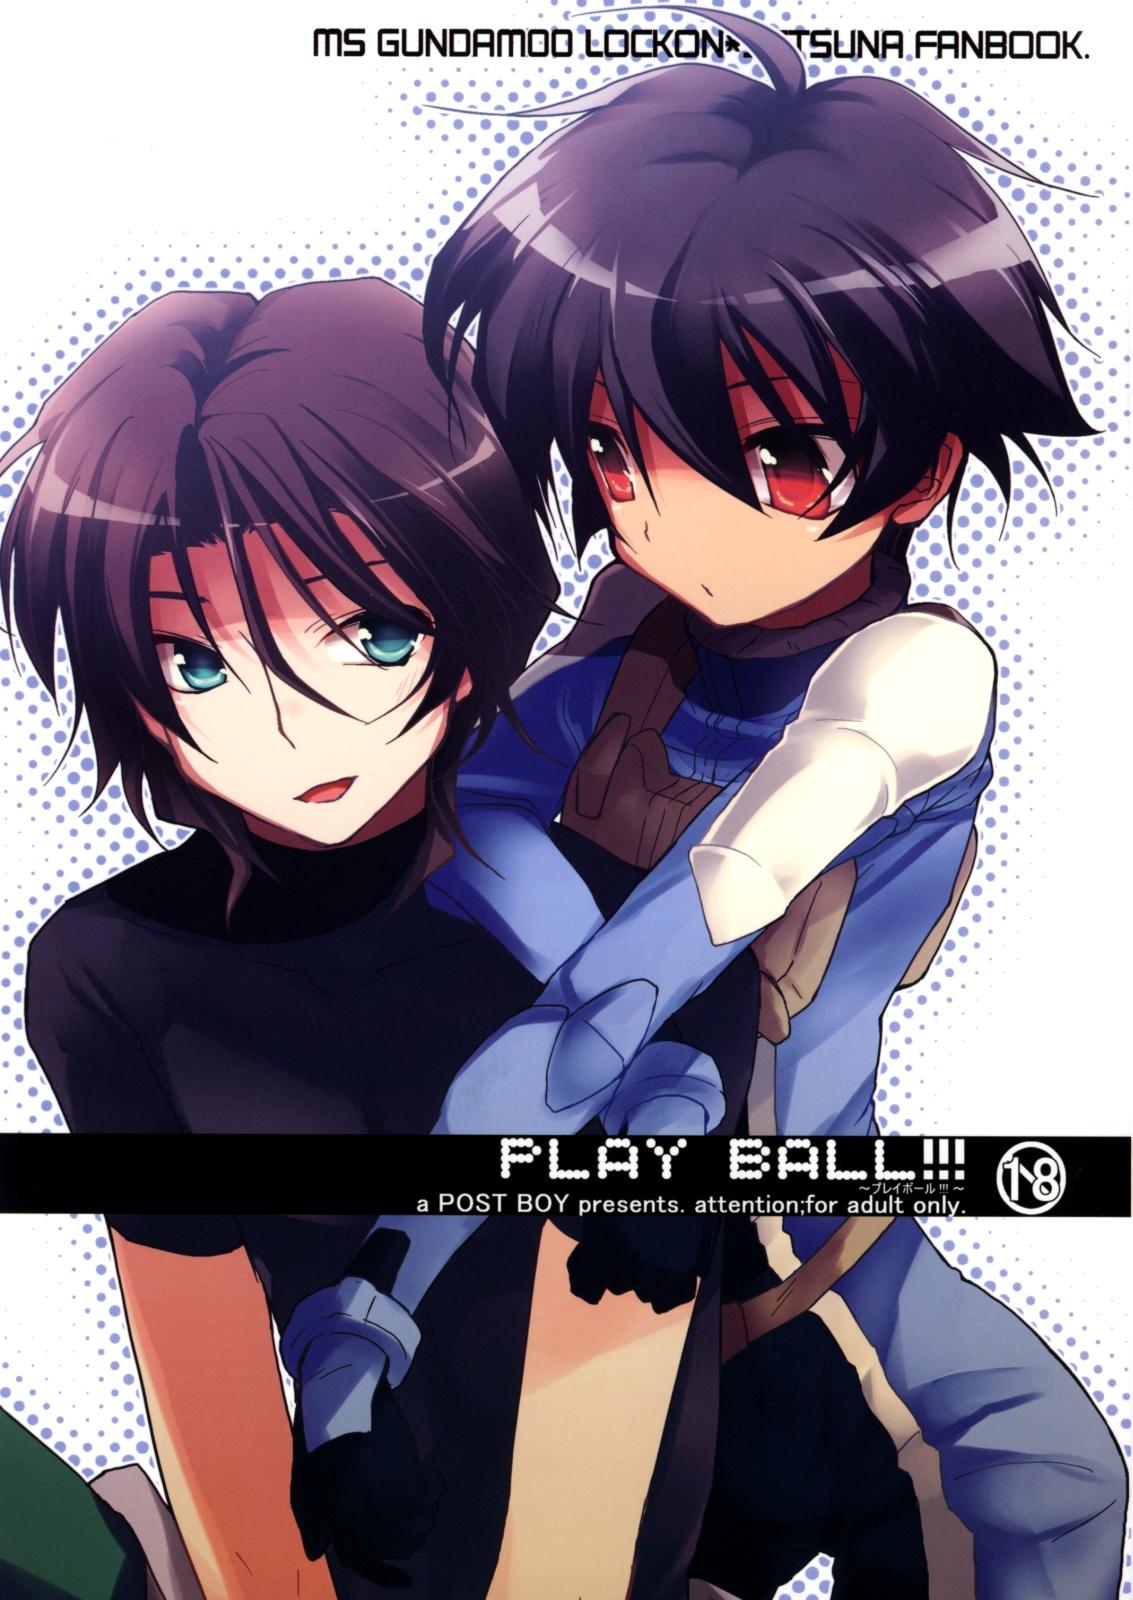 PLAY BALL!!! 0